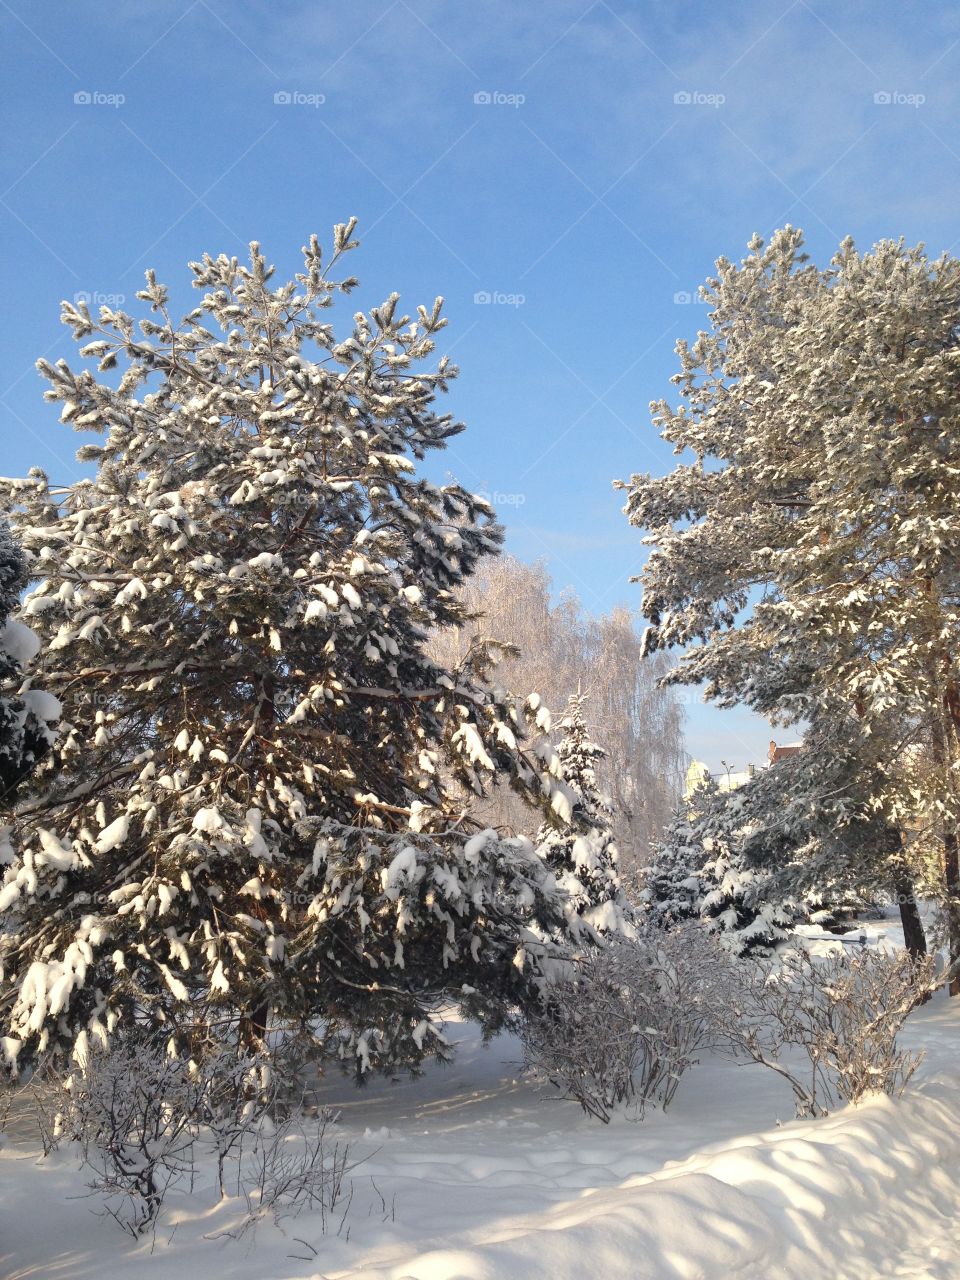 Snow on trees 